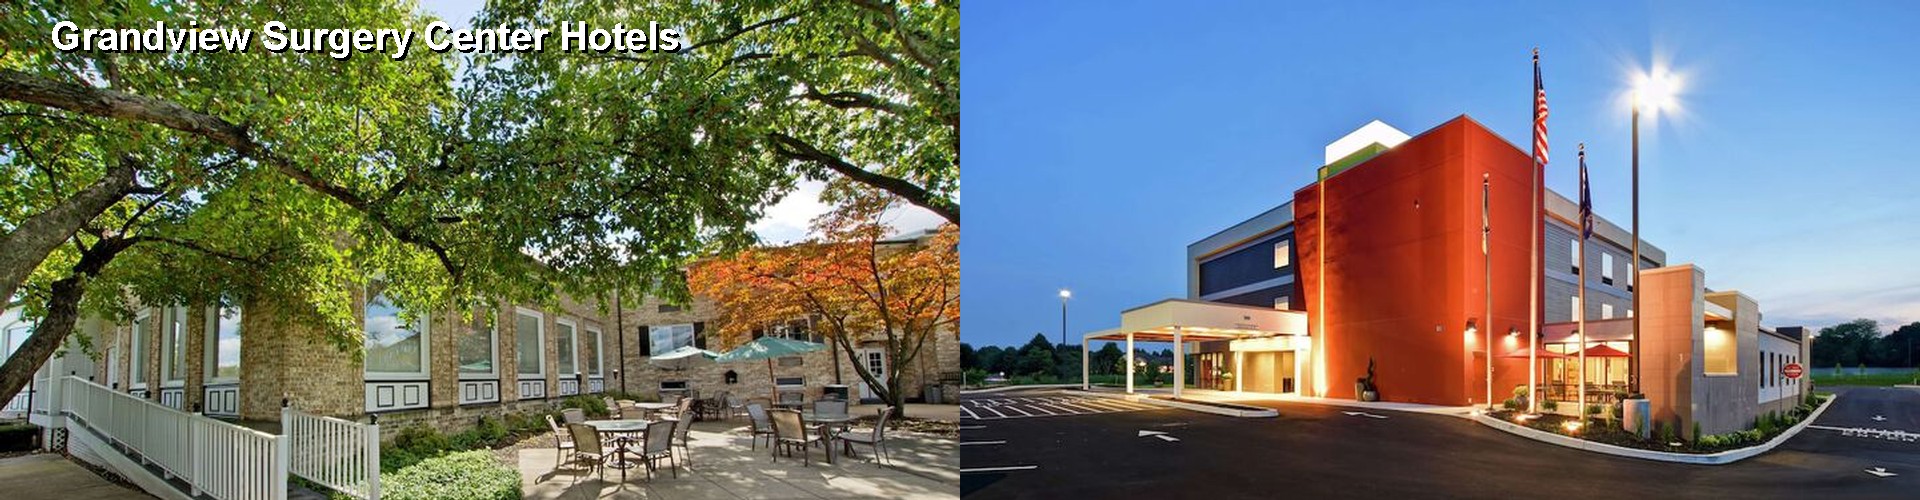 5 Best Hotels near Grandview Surgery Center